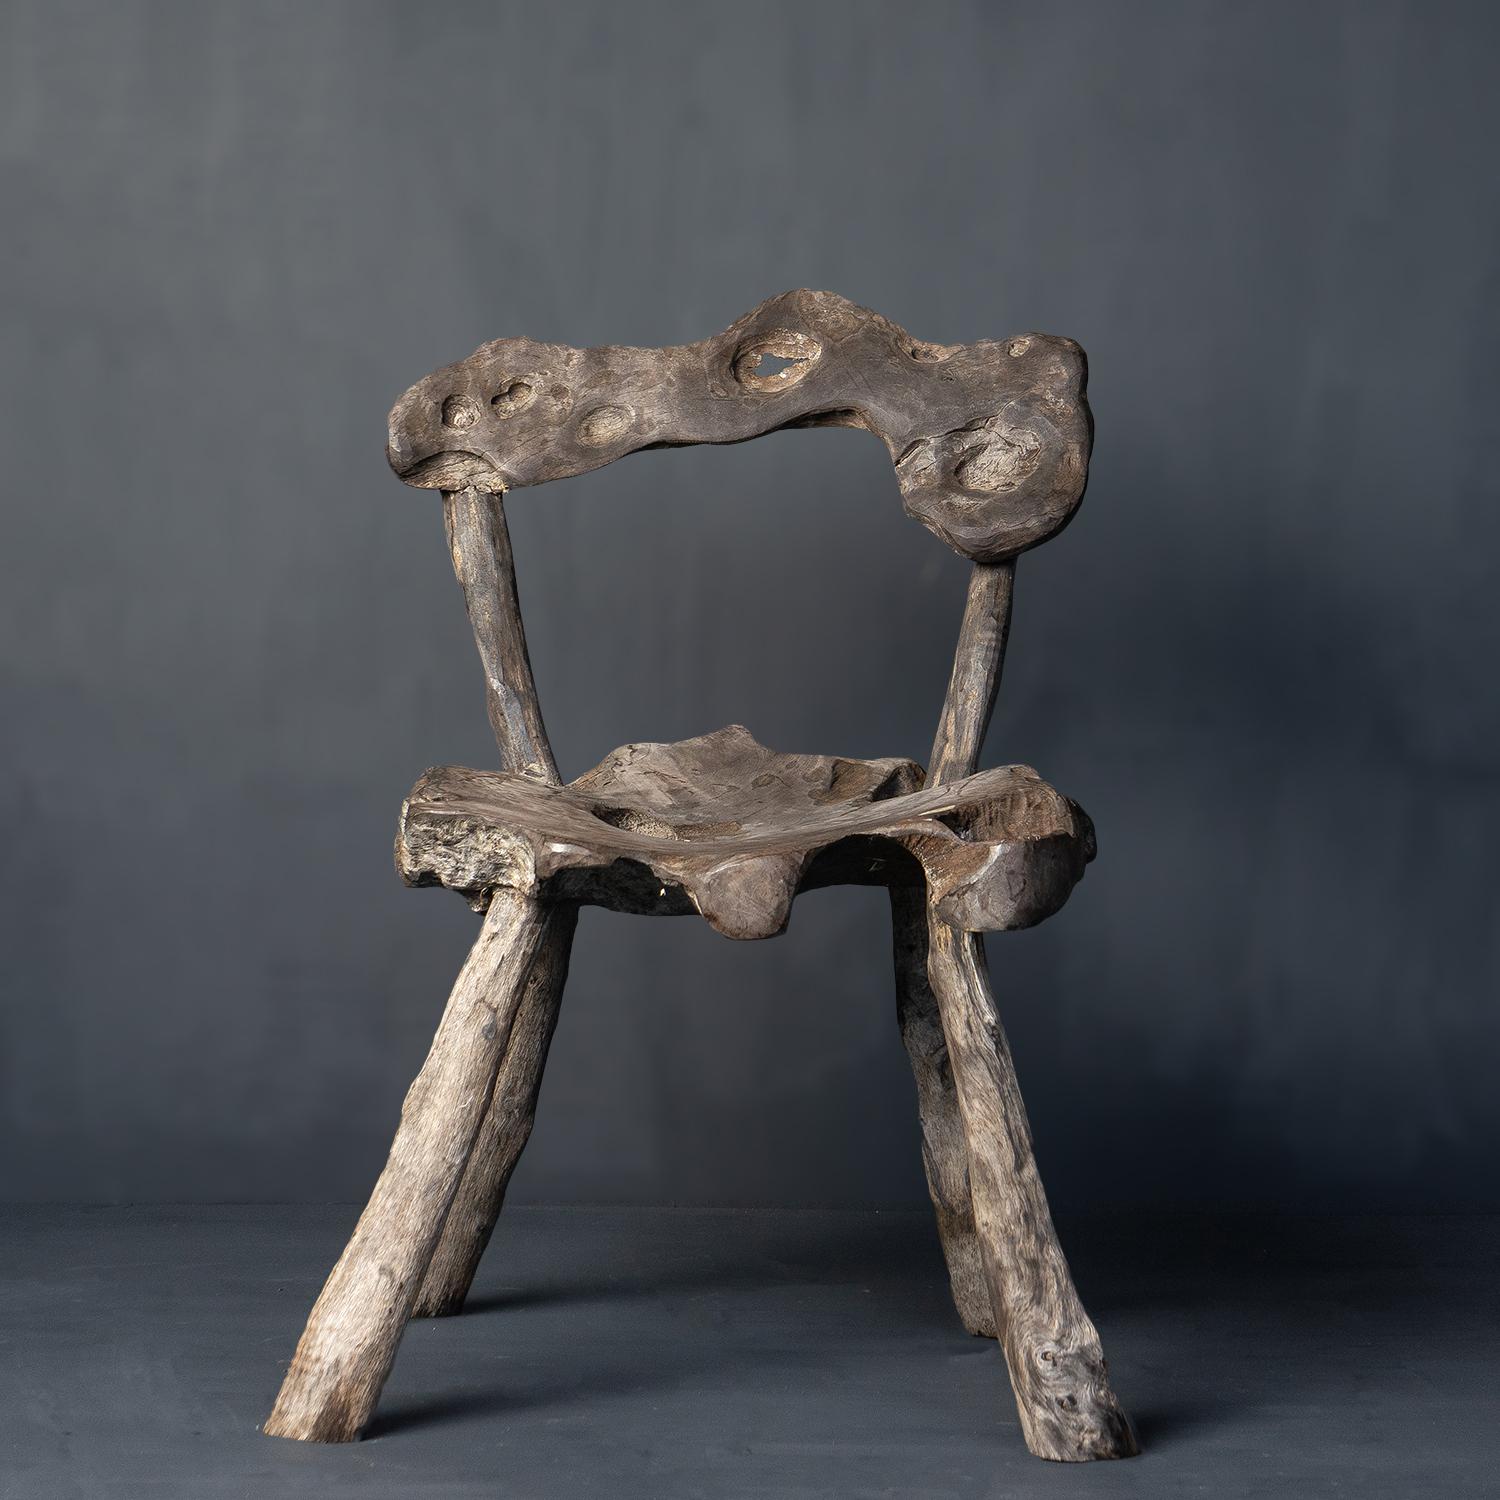 Chaise rustique vintage.

Fabriquée à partir de morceaux de bois de fer de Bornéo (Eusideroxylon Zwageri) assemblés dans leurs formes les plus naturalistes pour créer une chaise de style grotte.

Peut être utilisé à l'intérieur ou à